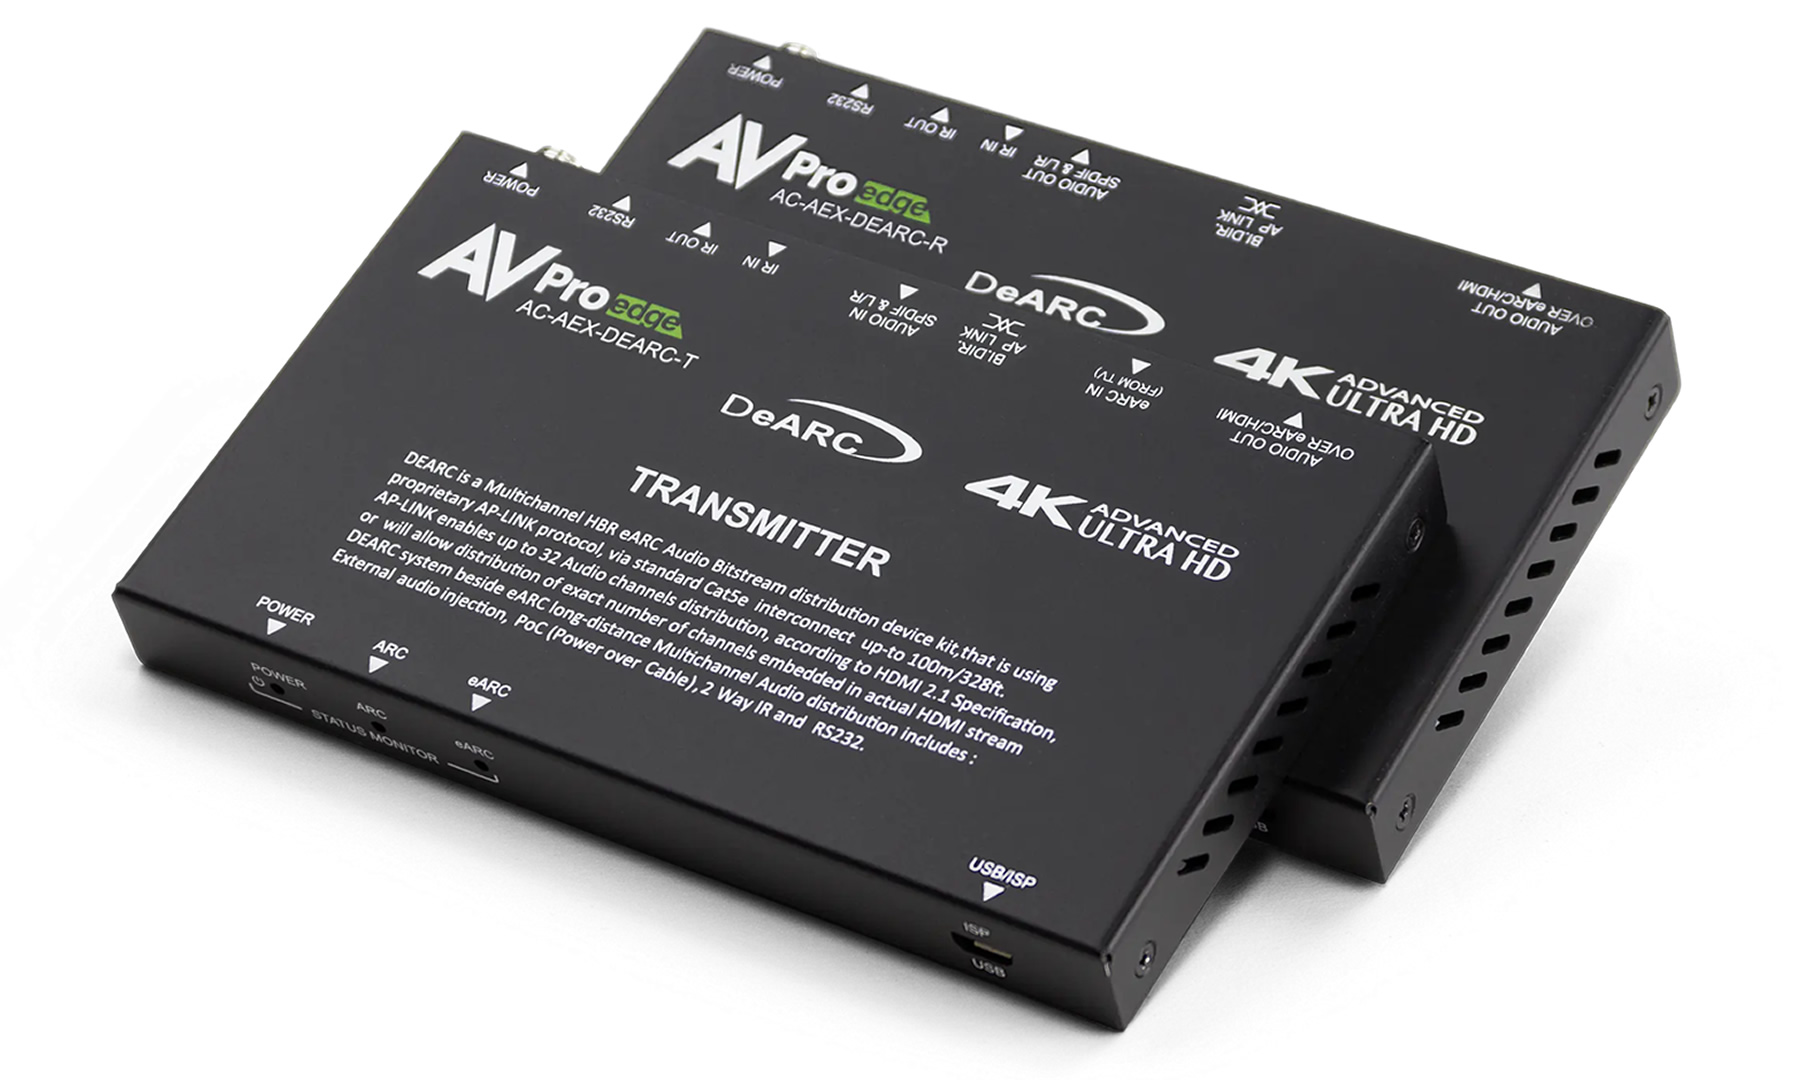 AC-AEX-DEARC-KIT eARC Extender Kit by AVPro Edge